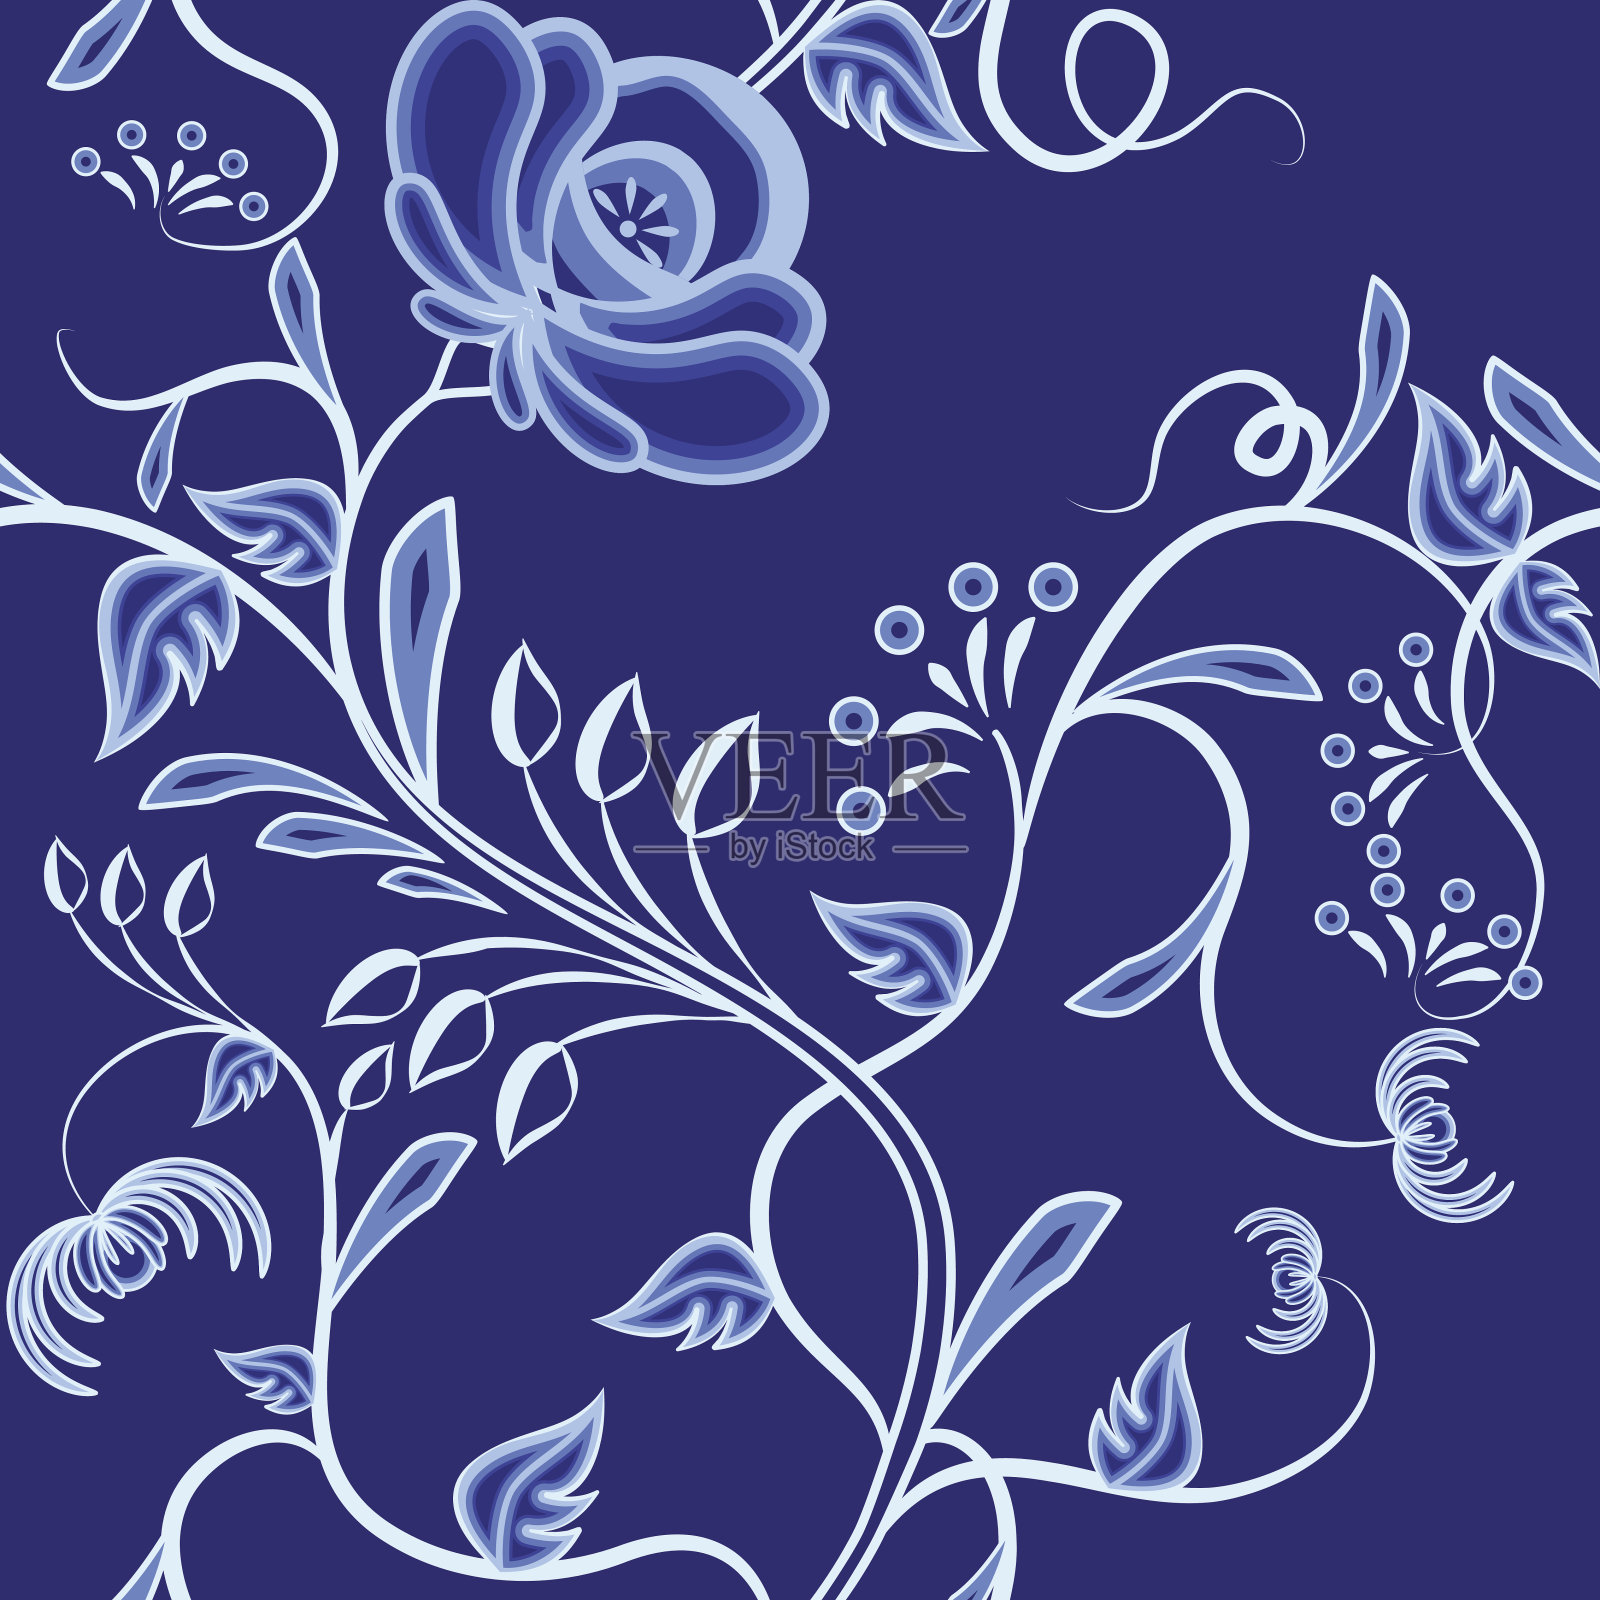 交织花的连续图案。深蓝色的背景仿俄罗斯风格的格热尔或中国画的瓷器。插画图片素材